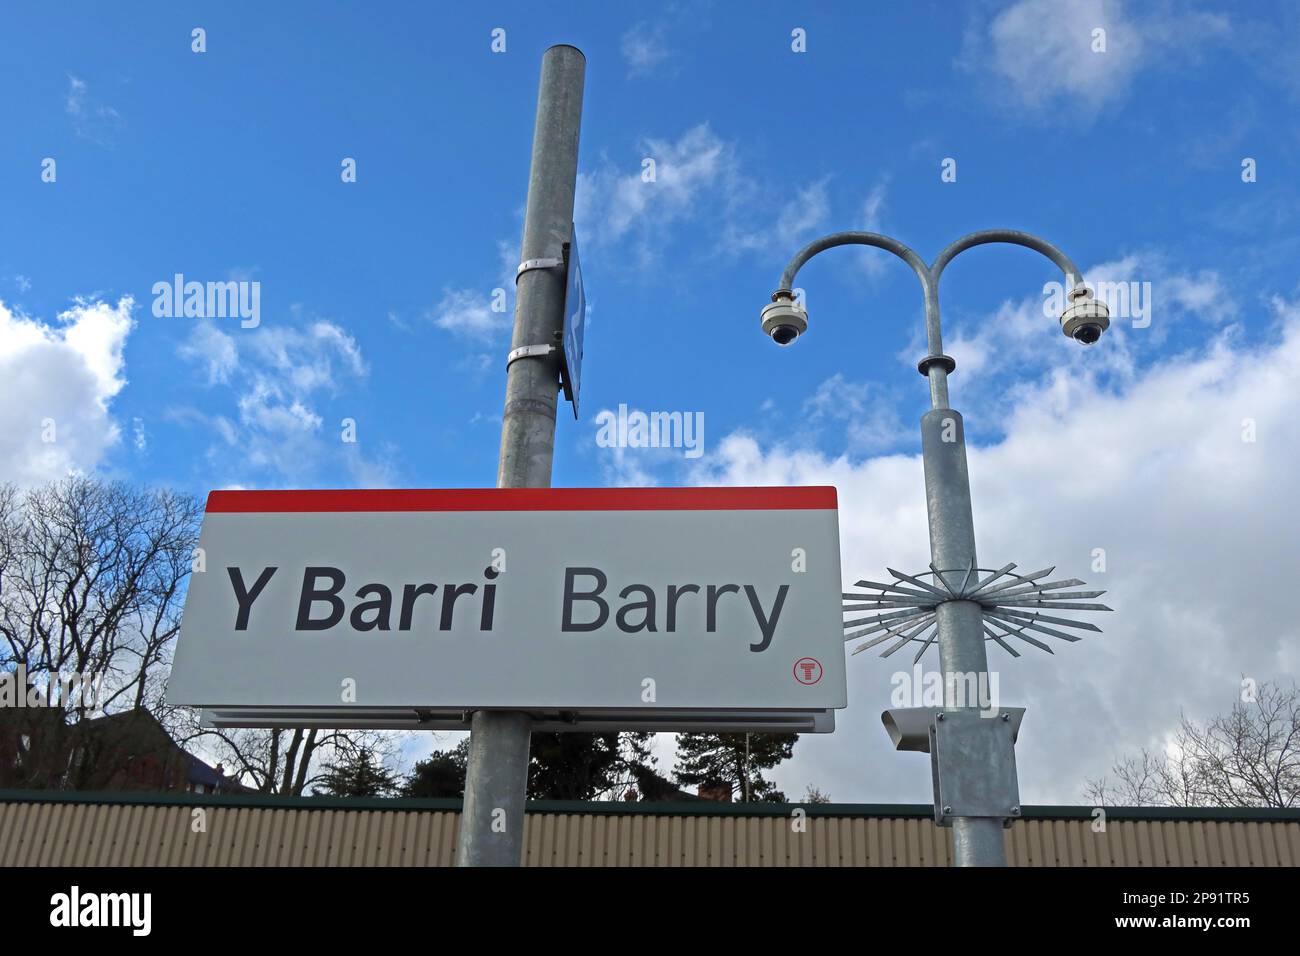 Blauer Himmel am Bahnsteig von Barry mit Videoüberwachung, Broad Street, ( Y Barri), Vale of Glamorgan, South Wales, Cymru, Großbritannien Stockfoto